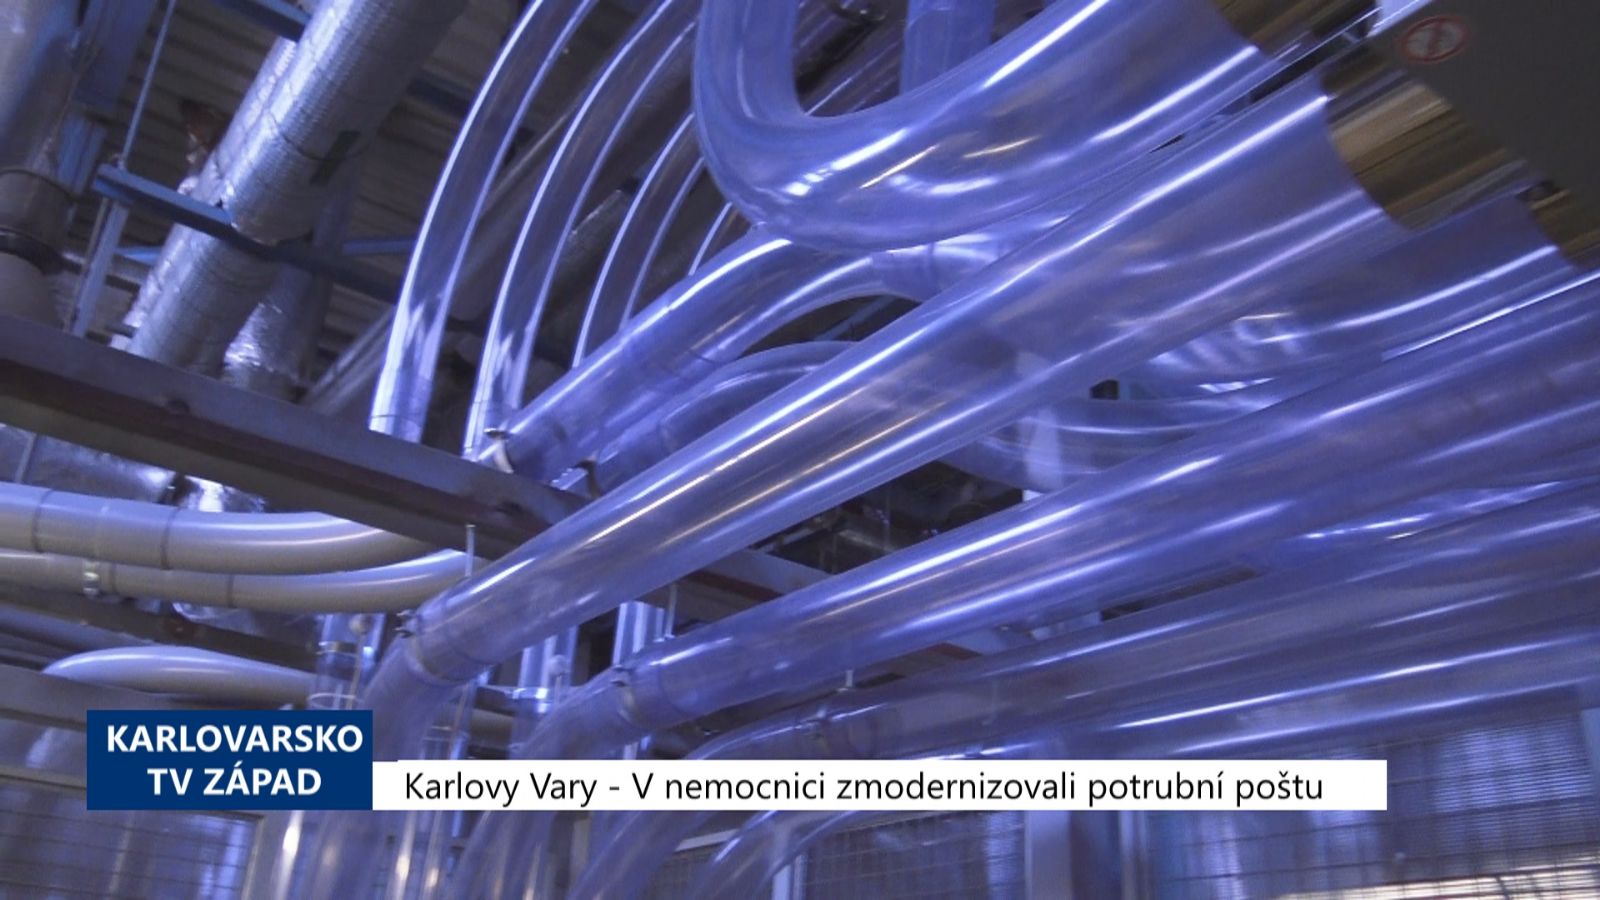 Karlovy Vary: V nemocnici zmodernizovali potrubní poštu (TV Západ)	